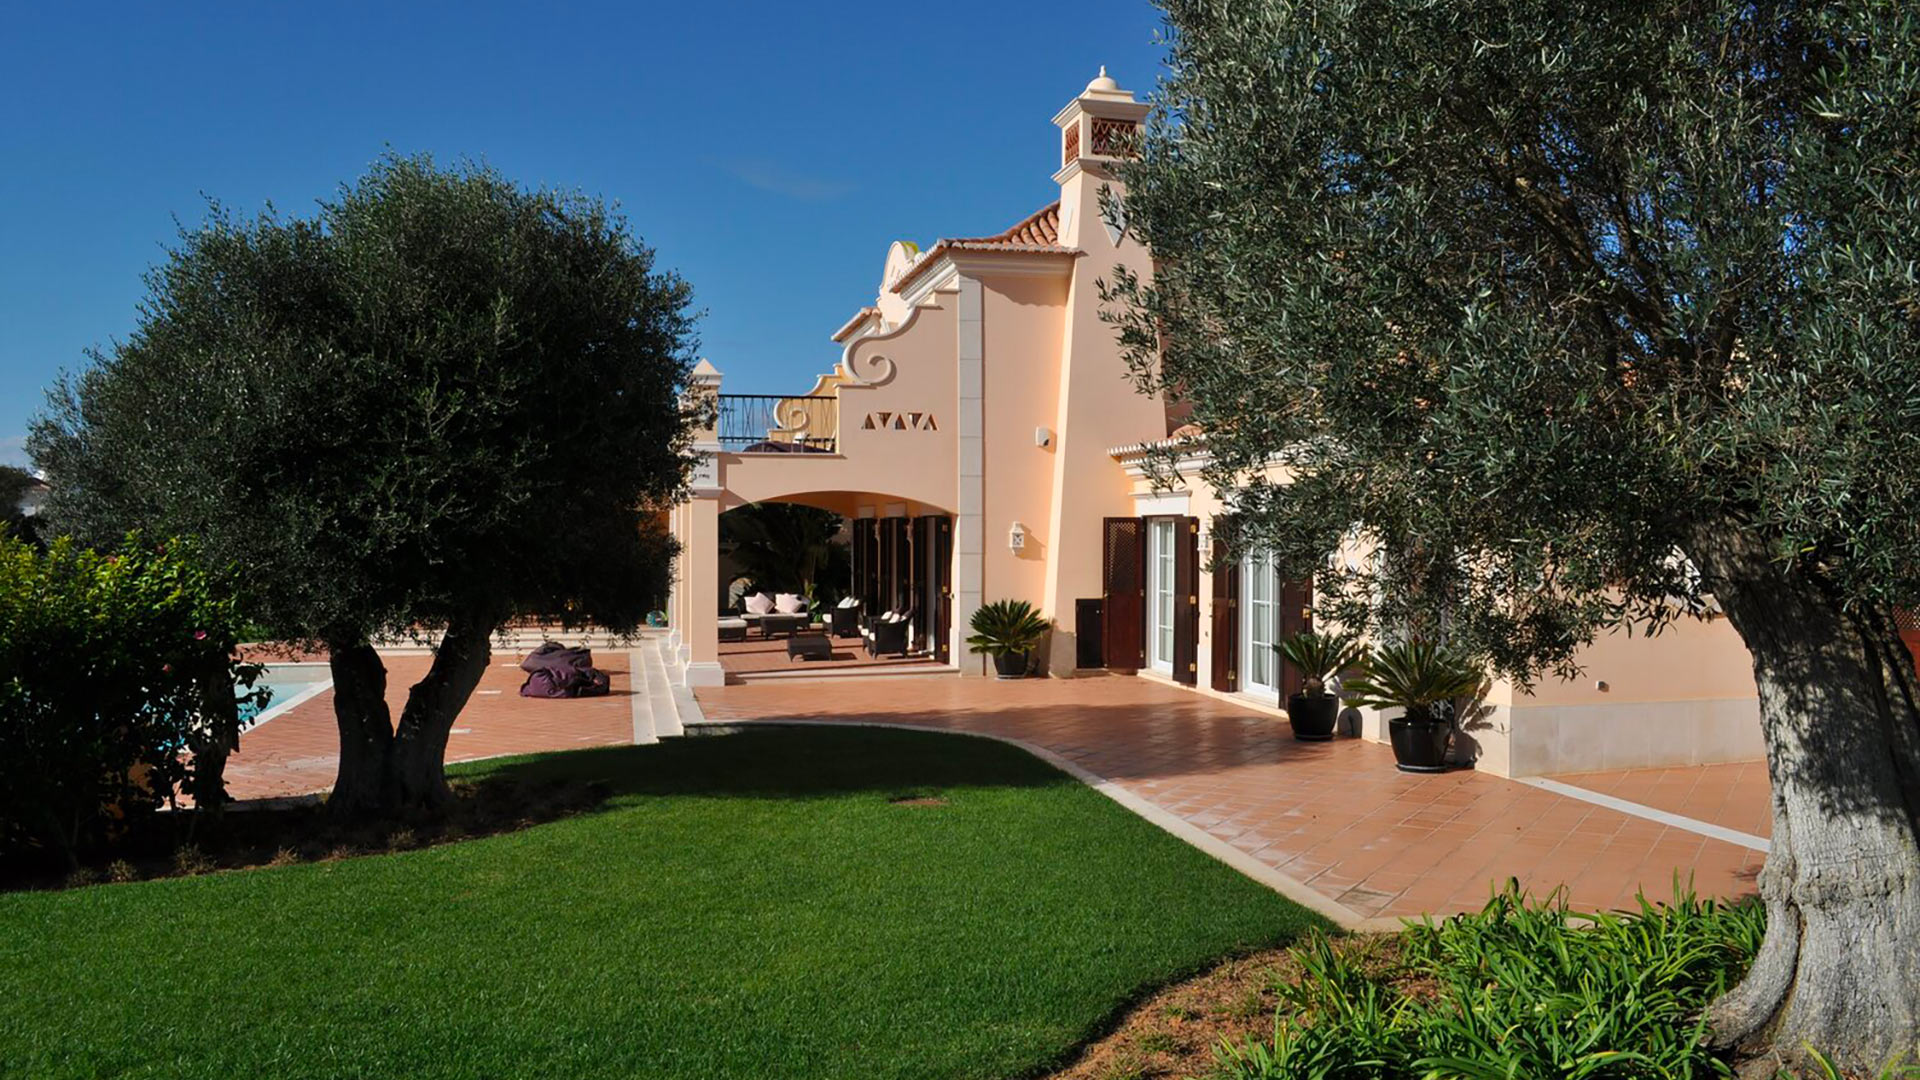 Villa Villa Martinhal Resort 90, Rental in Algarve